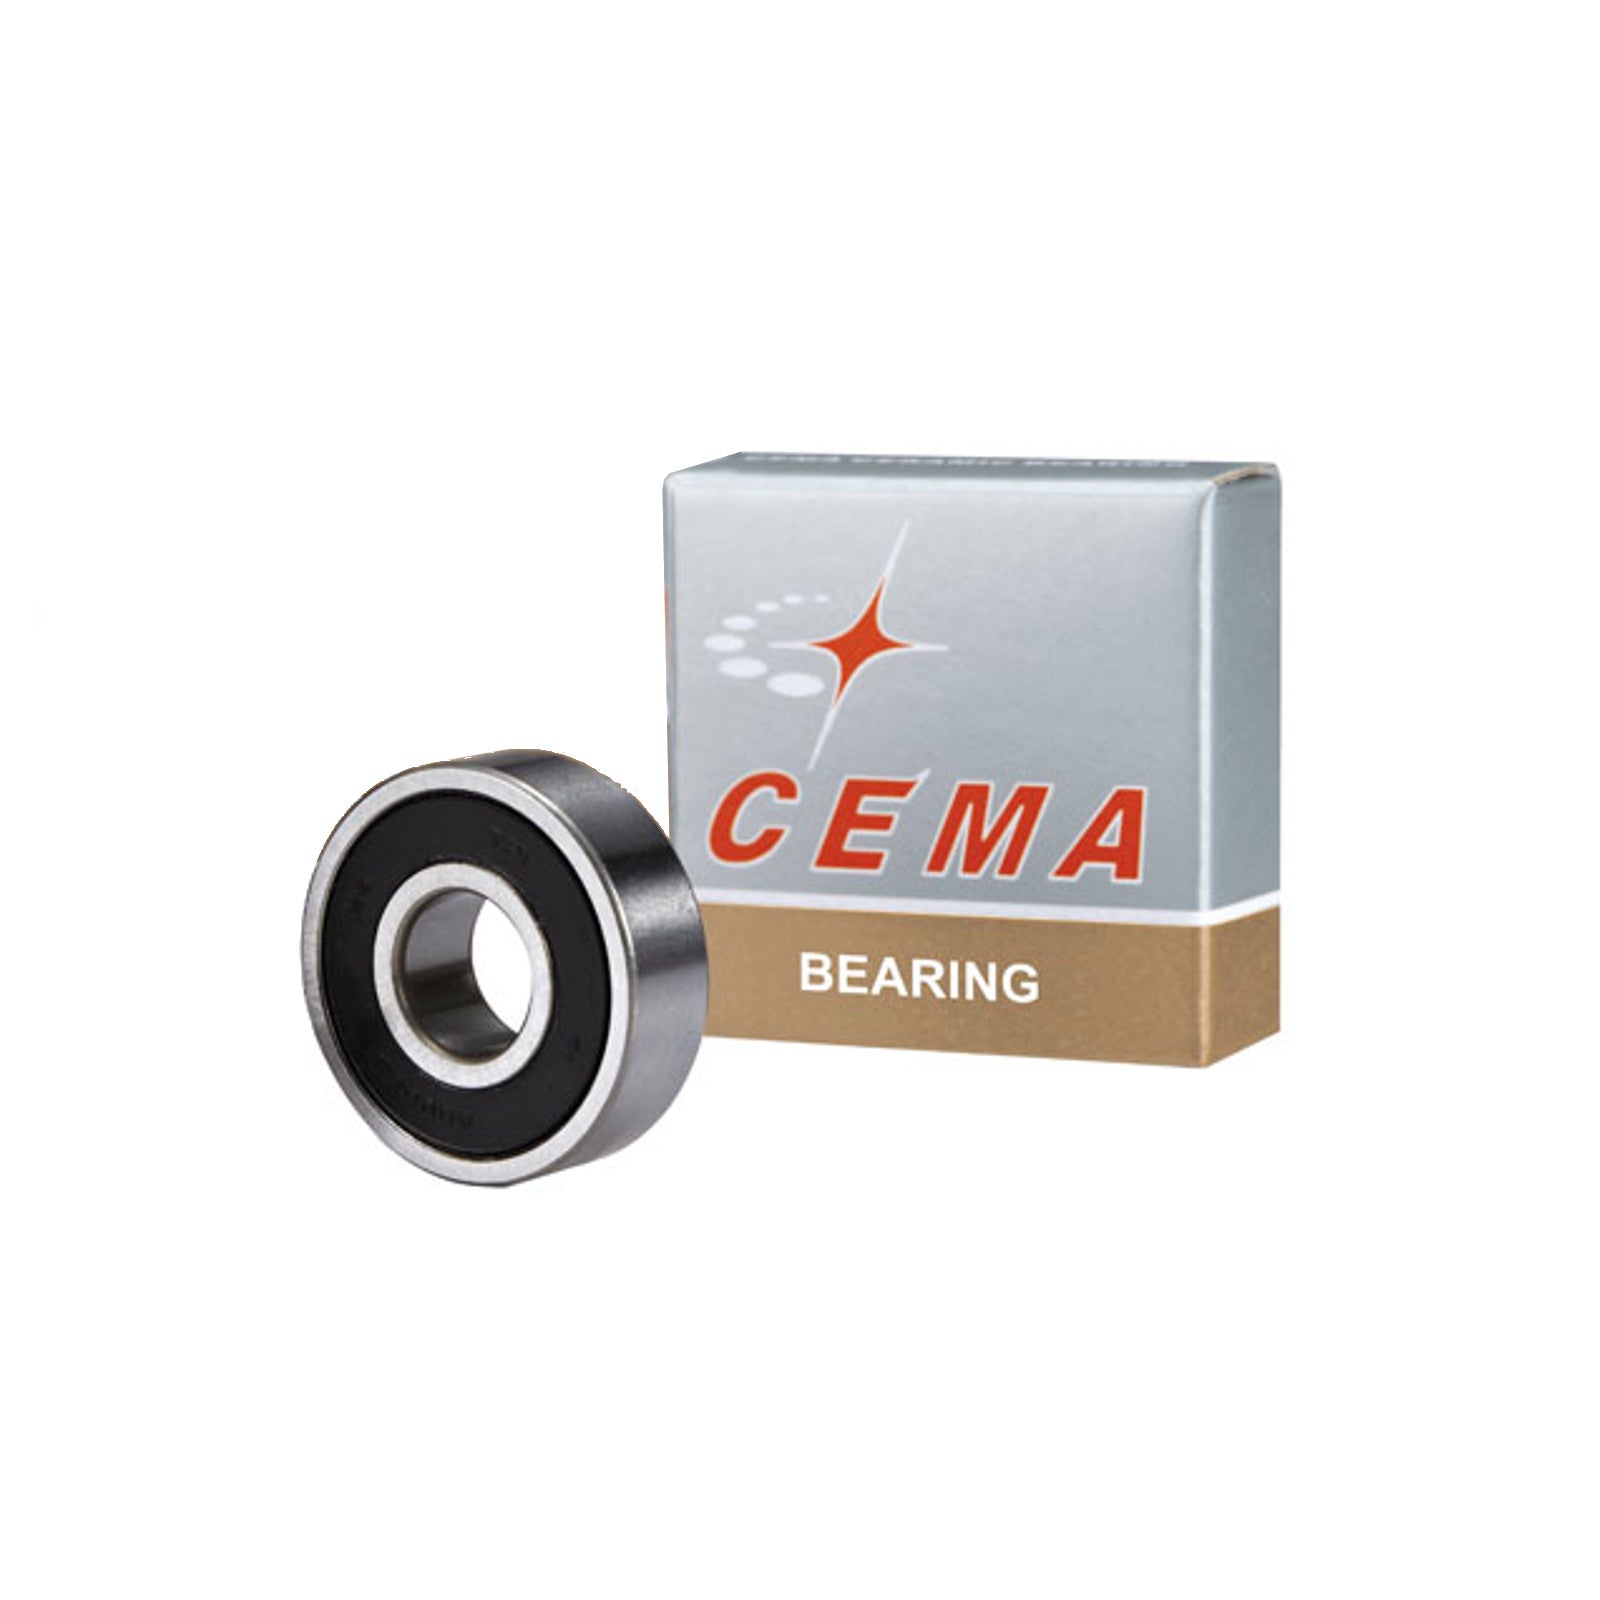 Cema Ceramic Replacement Sealed Cartridge Bearing